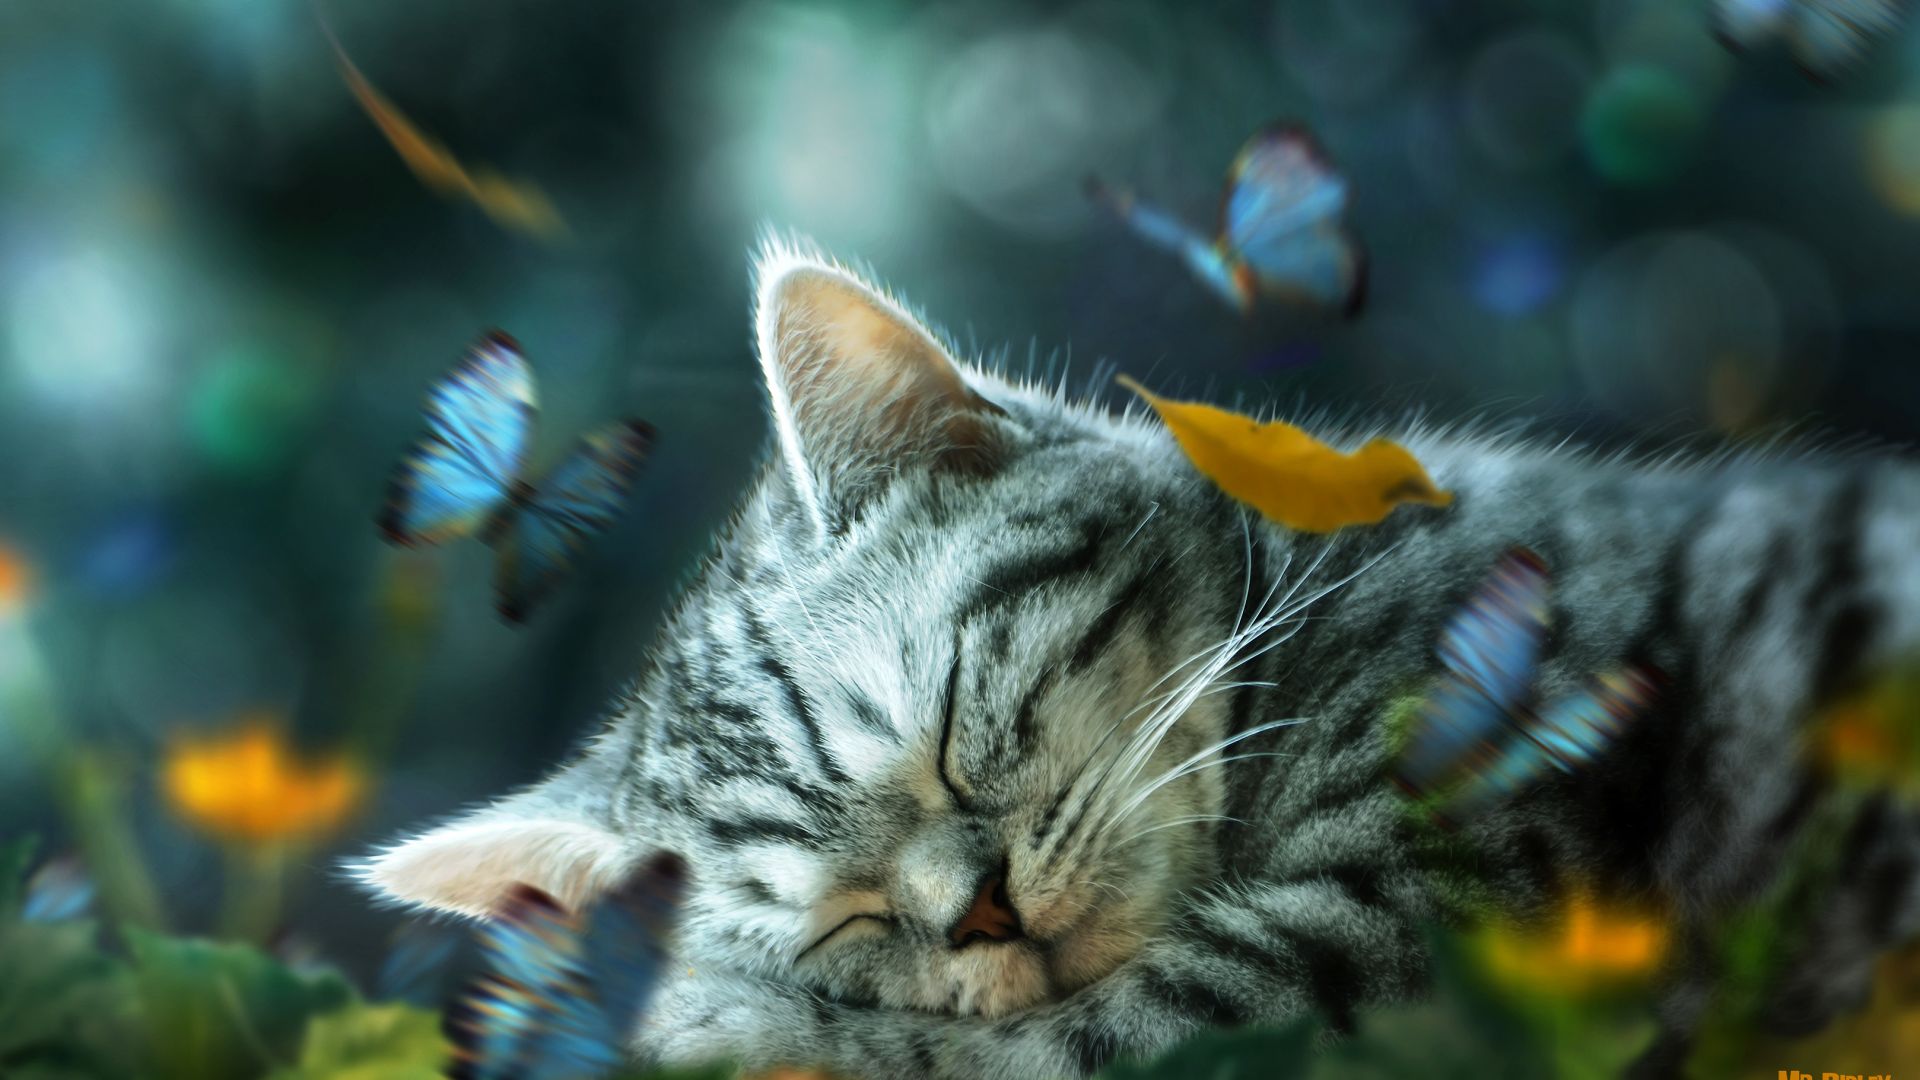 Wallpaper Cat nap daydream